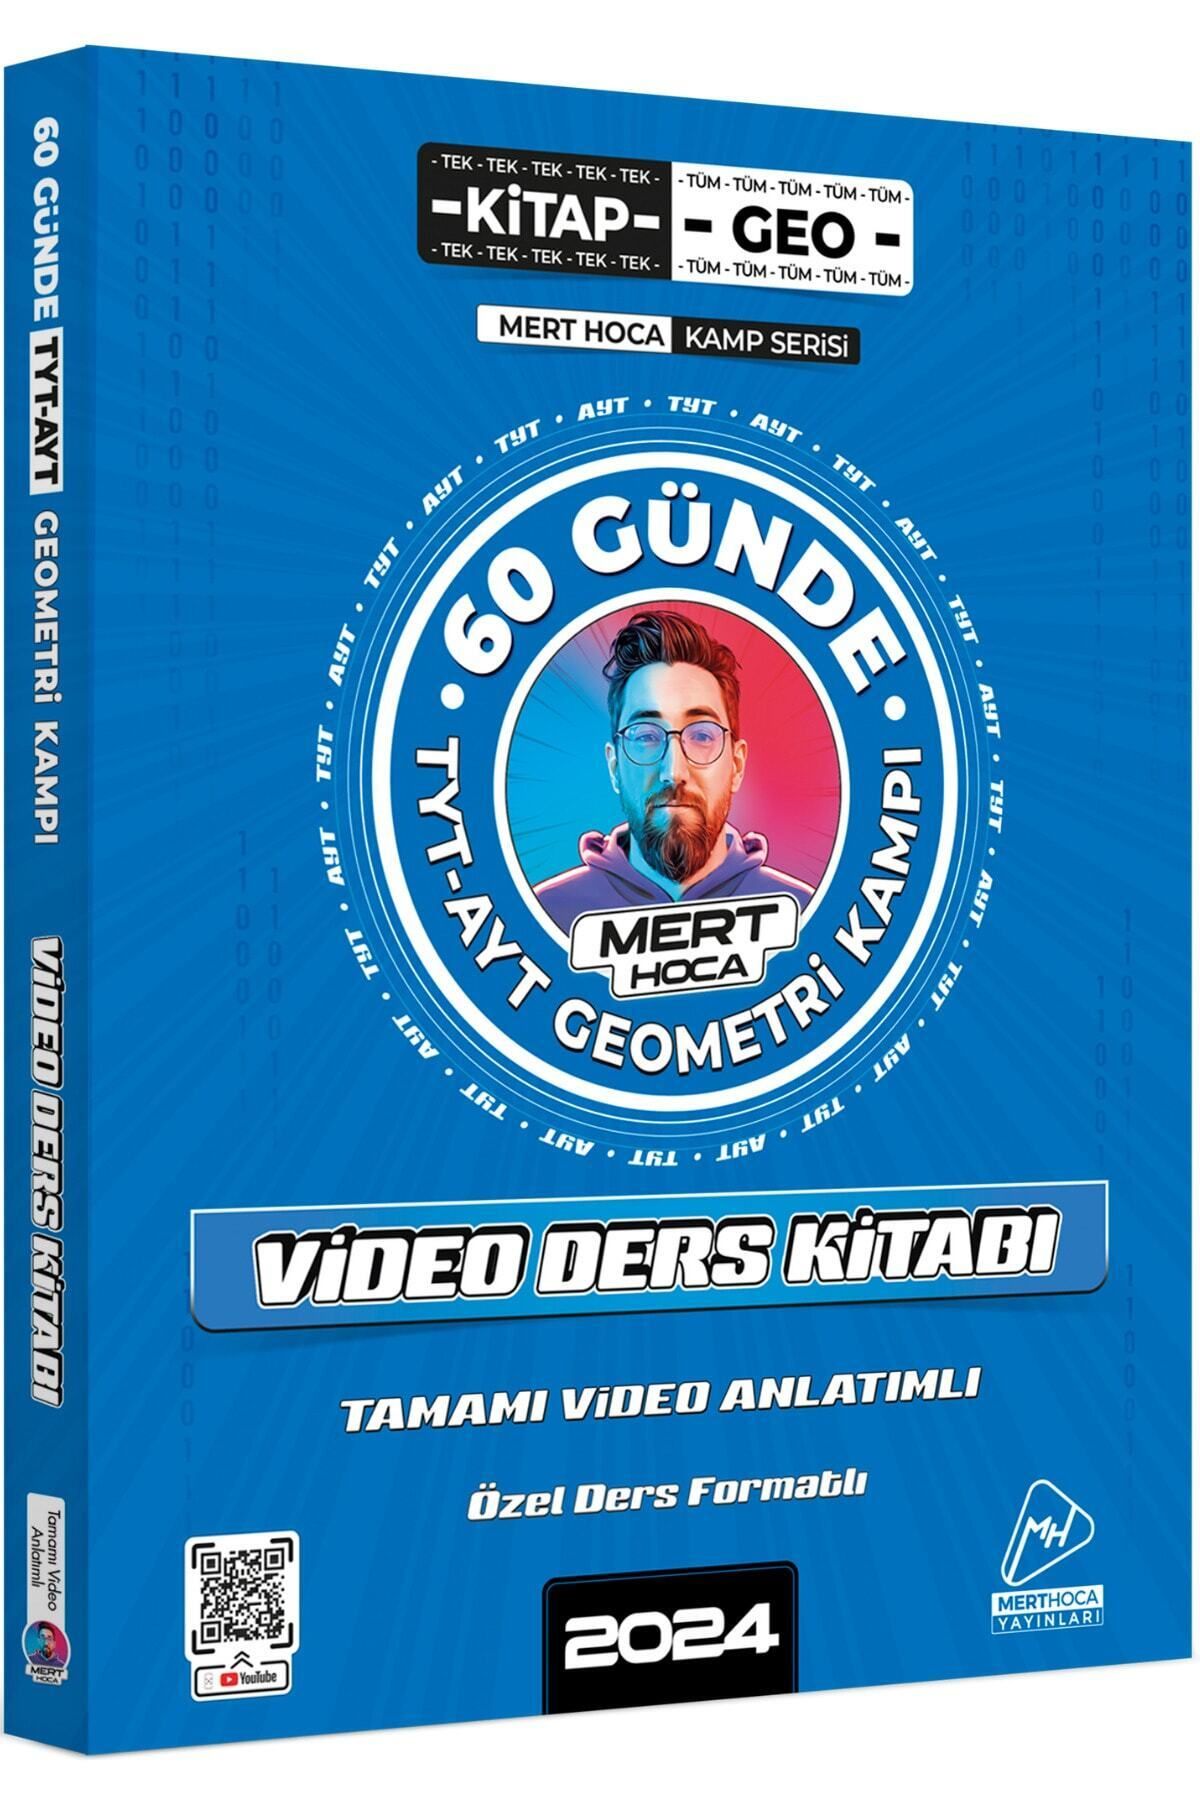 Mert Hoca Yayınları 2024 Mert Hoca 60 Günde Tyt-ayt Geometri Kampı Video Ders Kitabı